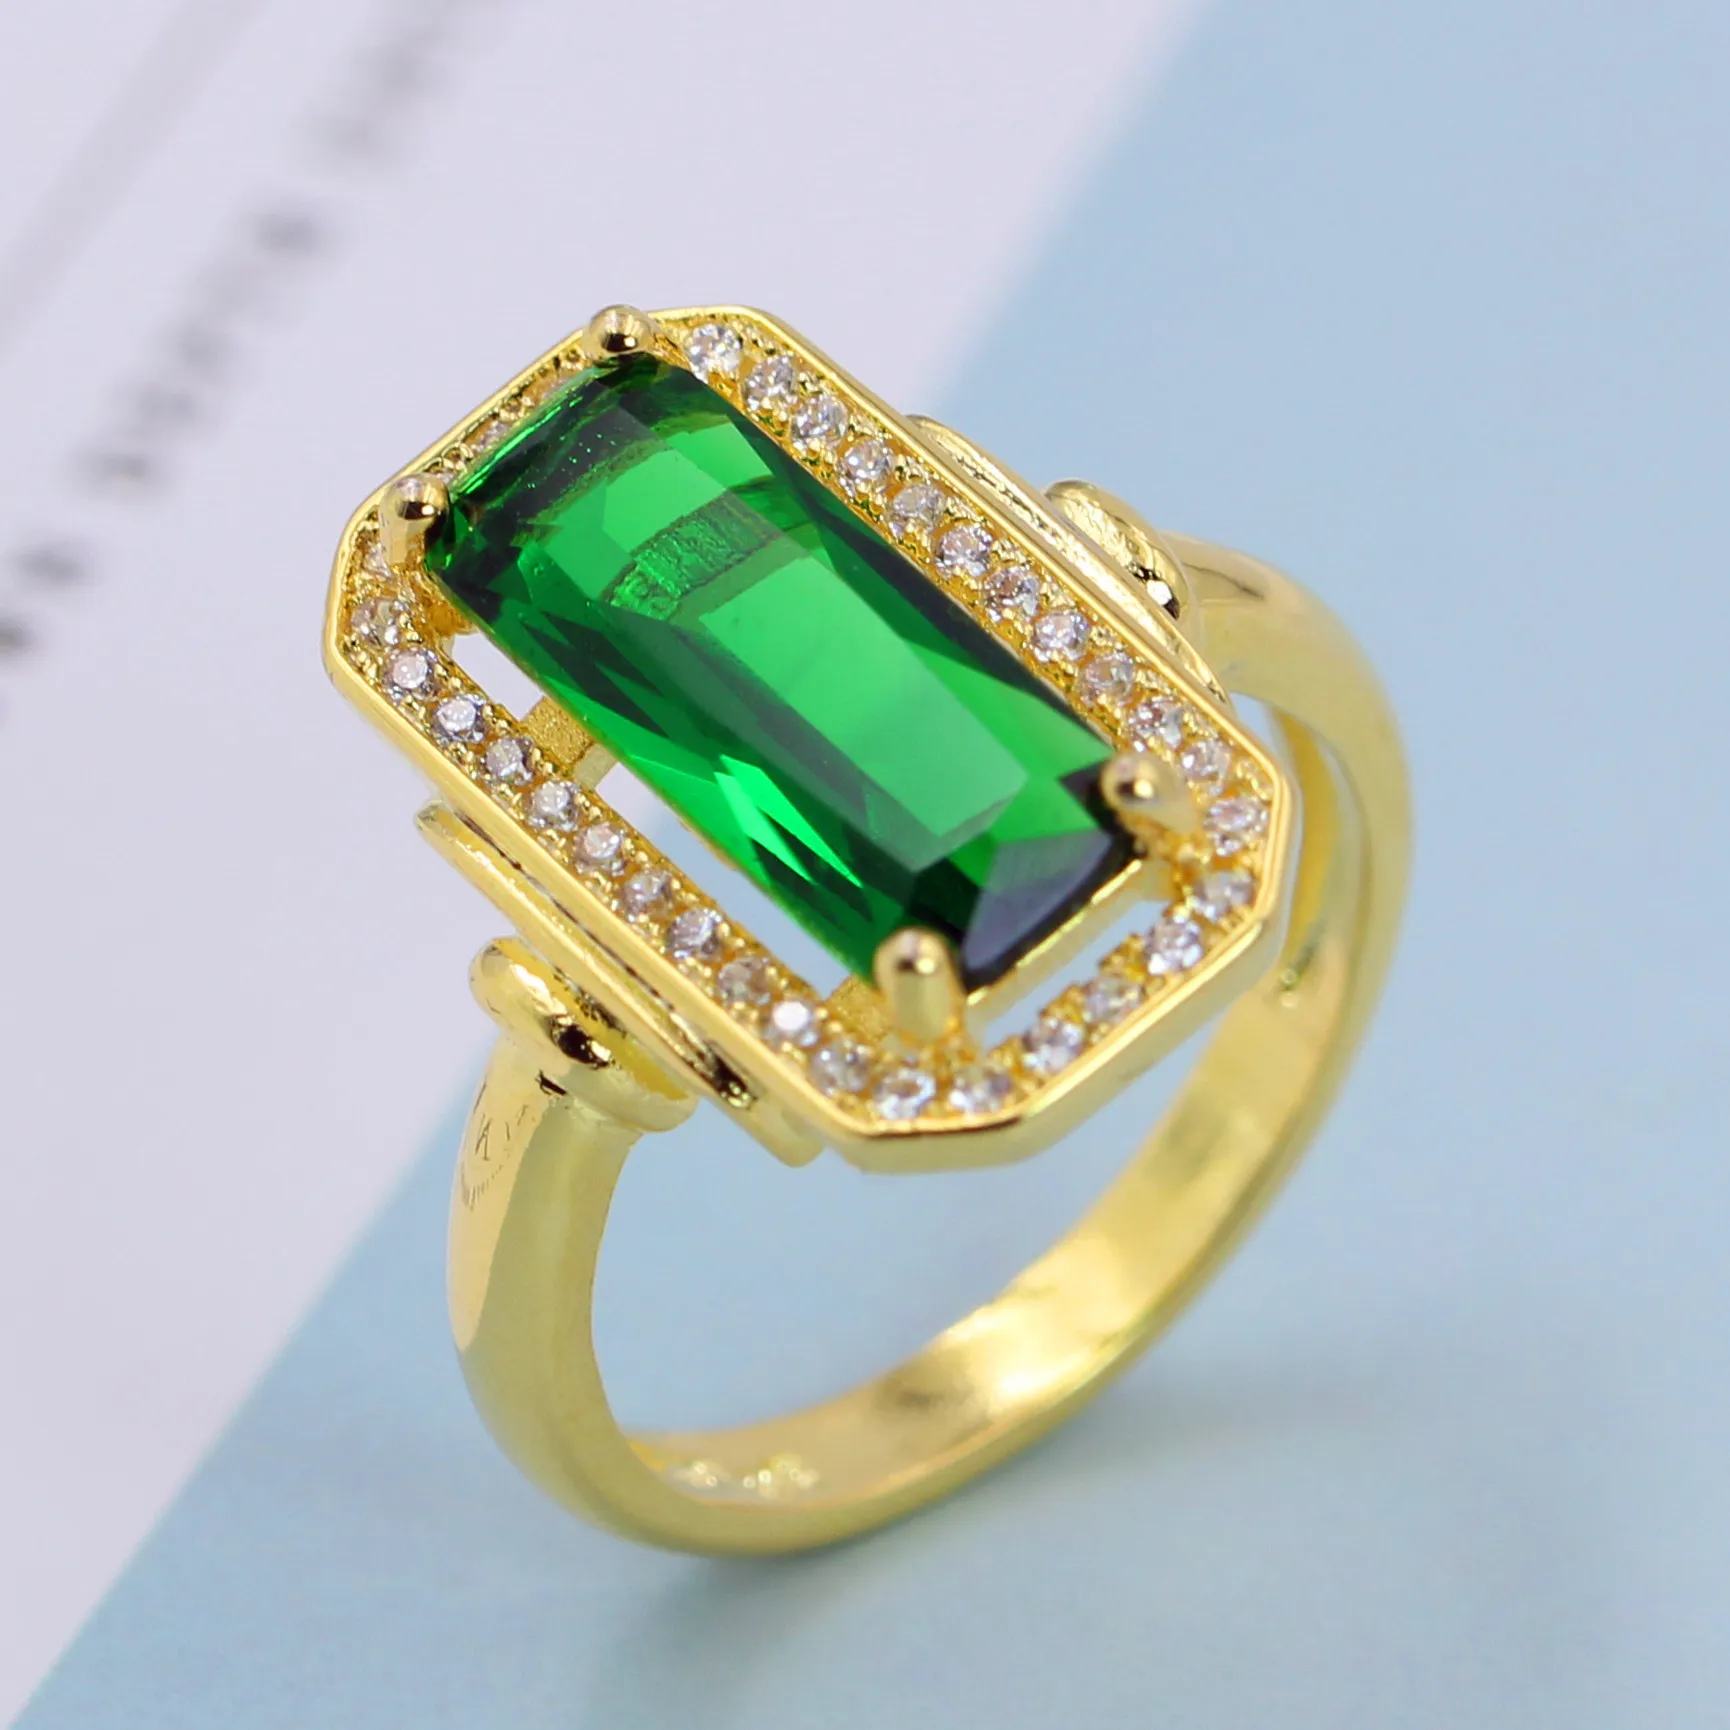 14 К золото зеленый изумруд агат кольца Anillos де бирюза нефрит алмаз Bague или Jaune Bizuteria драгоценный камень кольца из перидота 6 7 8 9 10 - Цвет камня: Зеленый